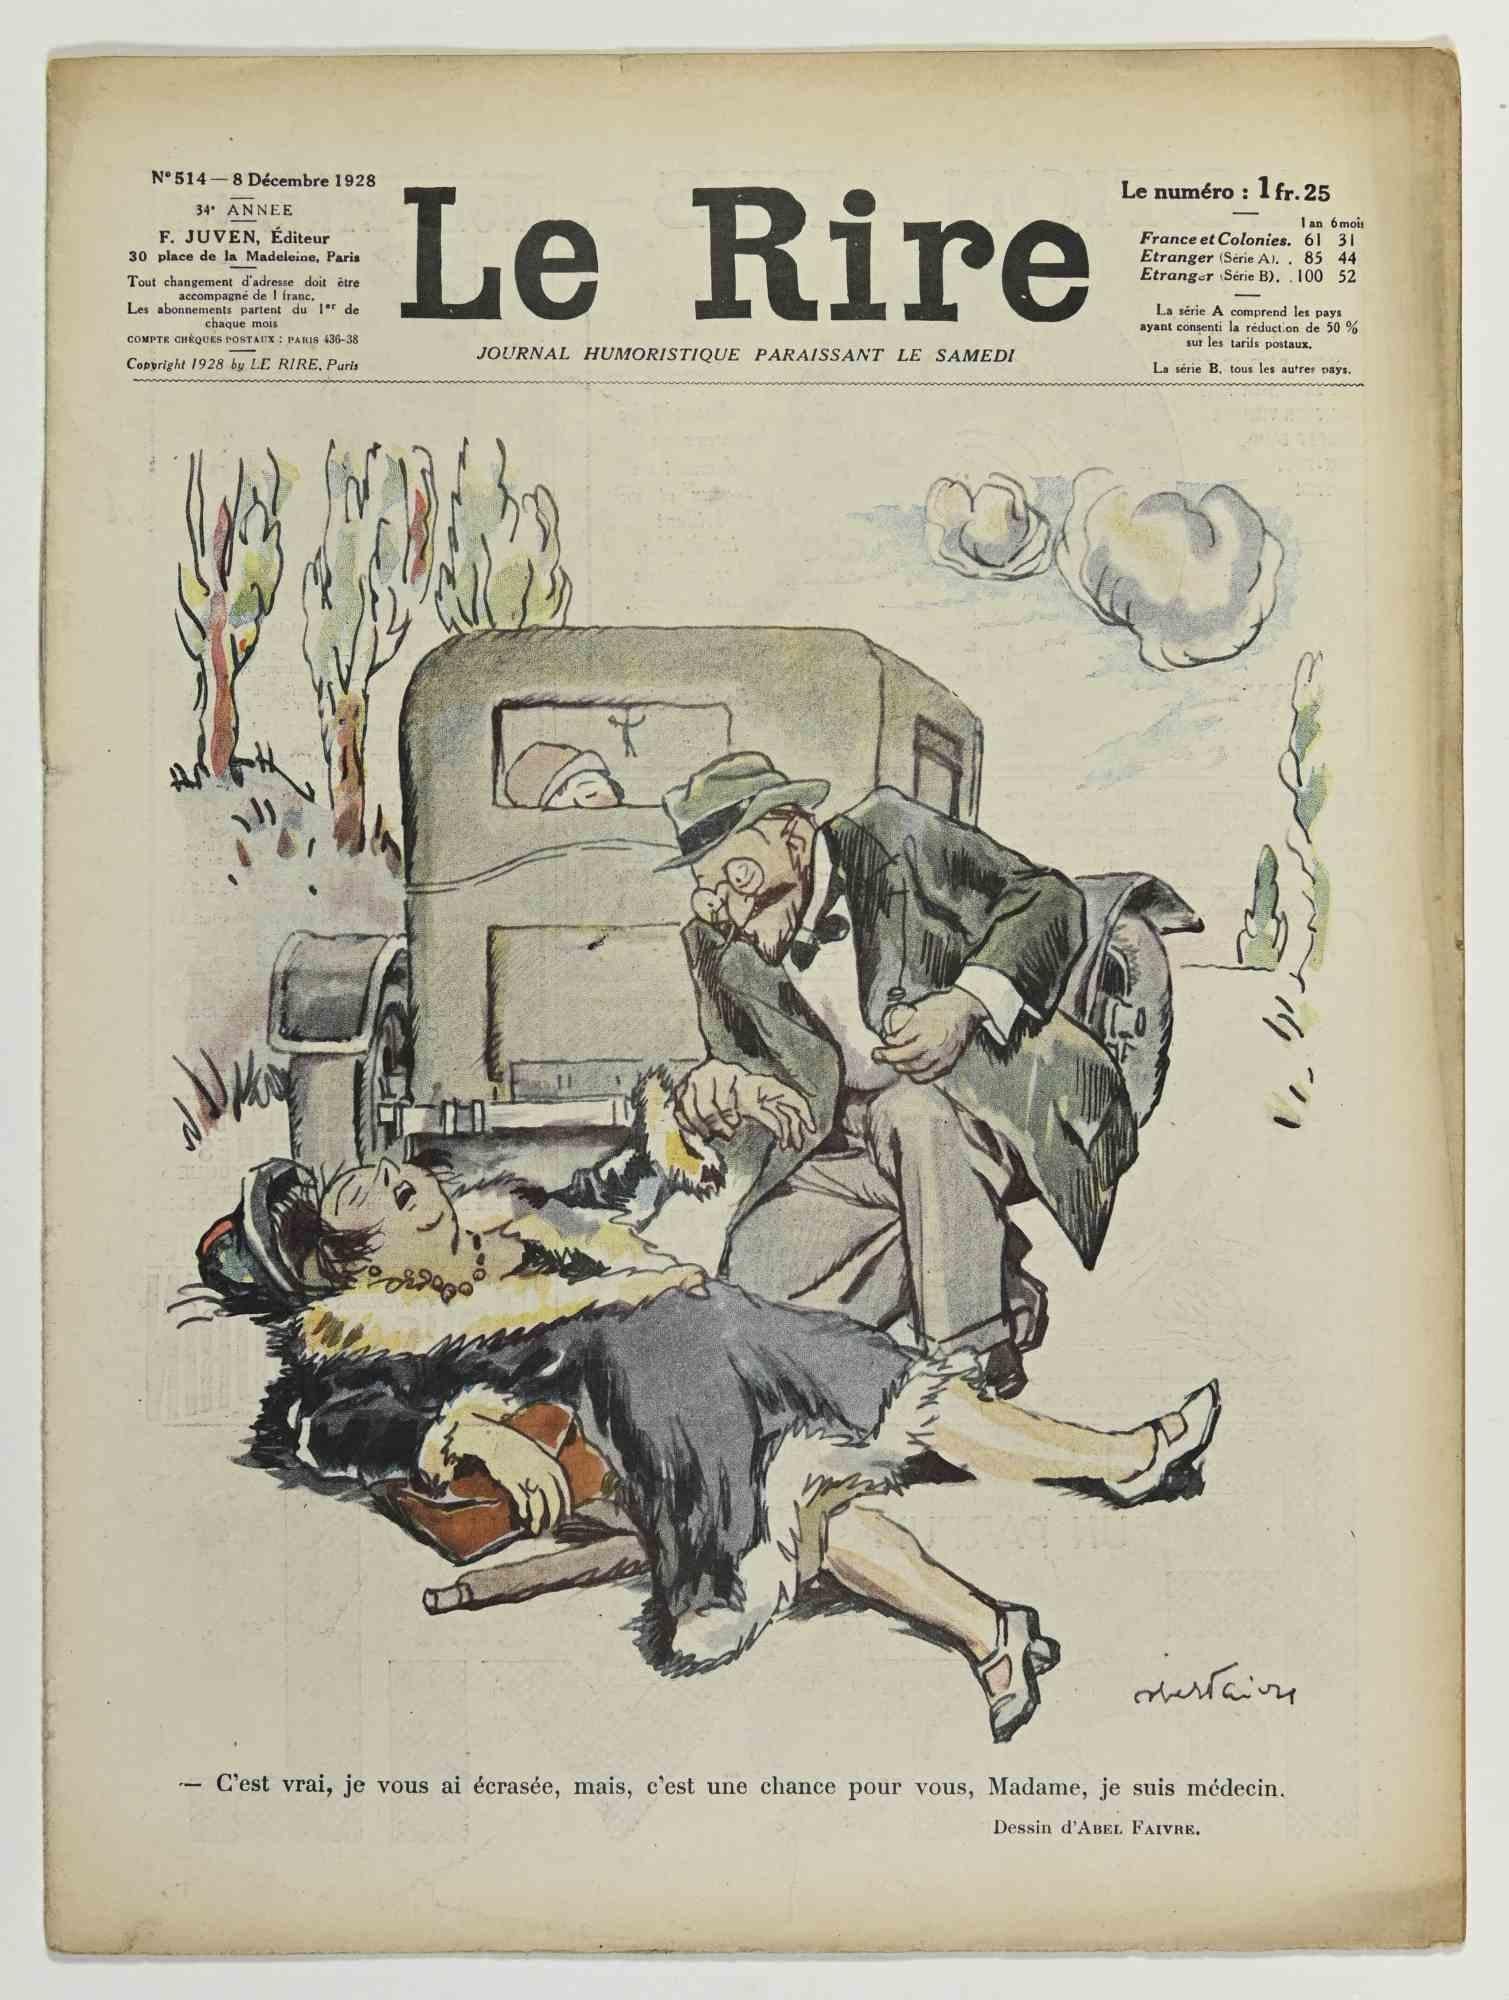 Le Rire - Magazine illustré par Abel Faivre - 1928 - Moderne Art par Jules-Abel Faivre